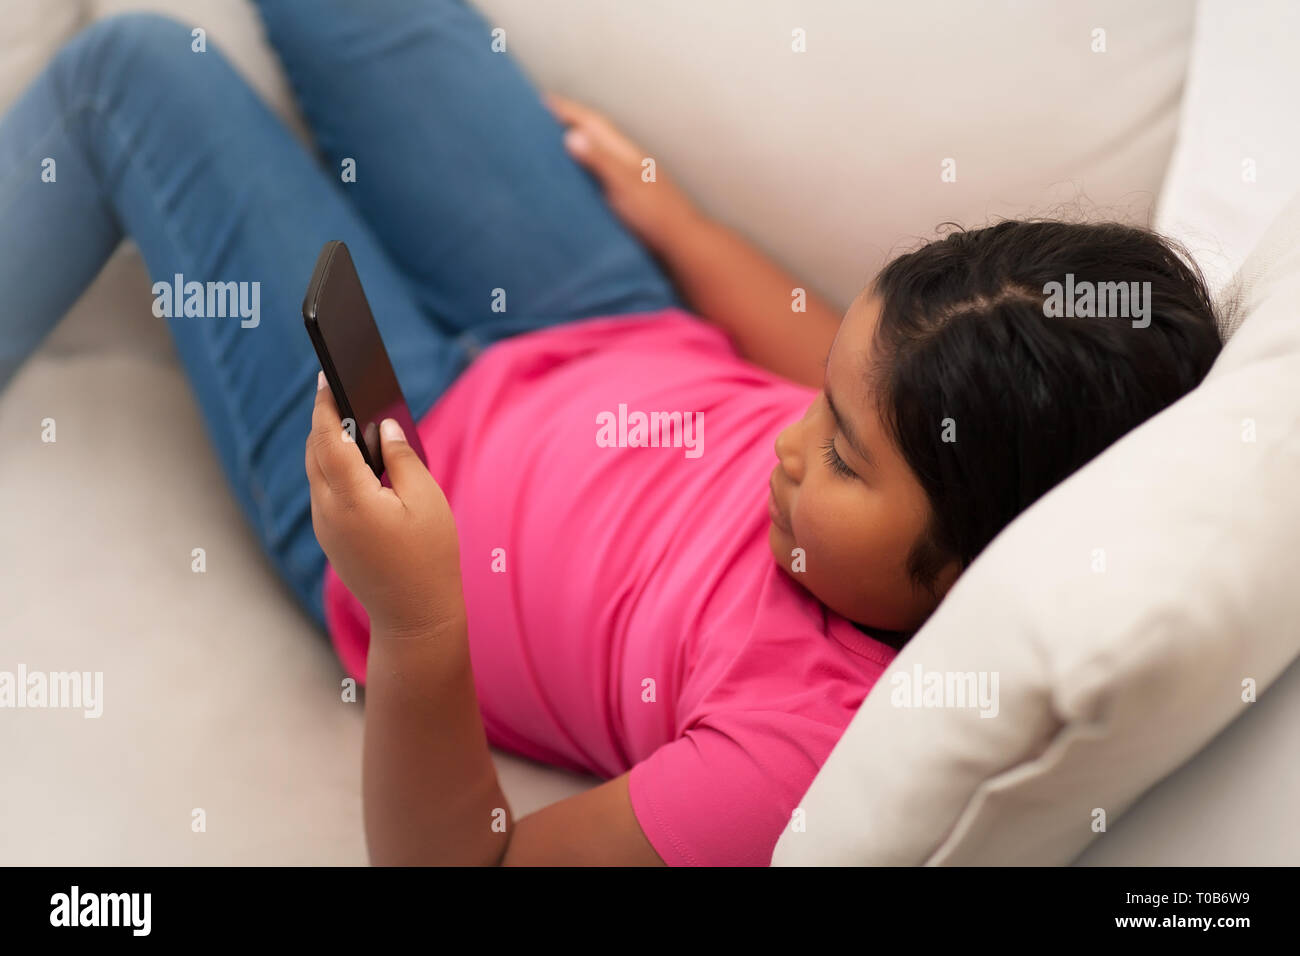 Giovane ragazza seduta con le gambe stese su un lettino usando un telefono a testo o visualizzare i contenuti online senza supervisione. Foto Stock